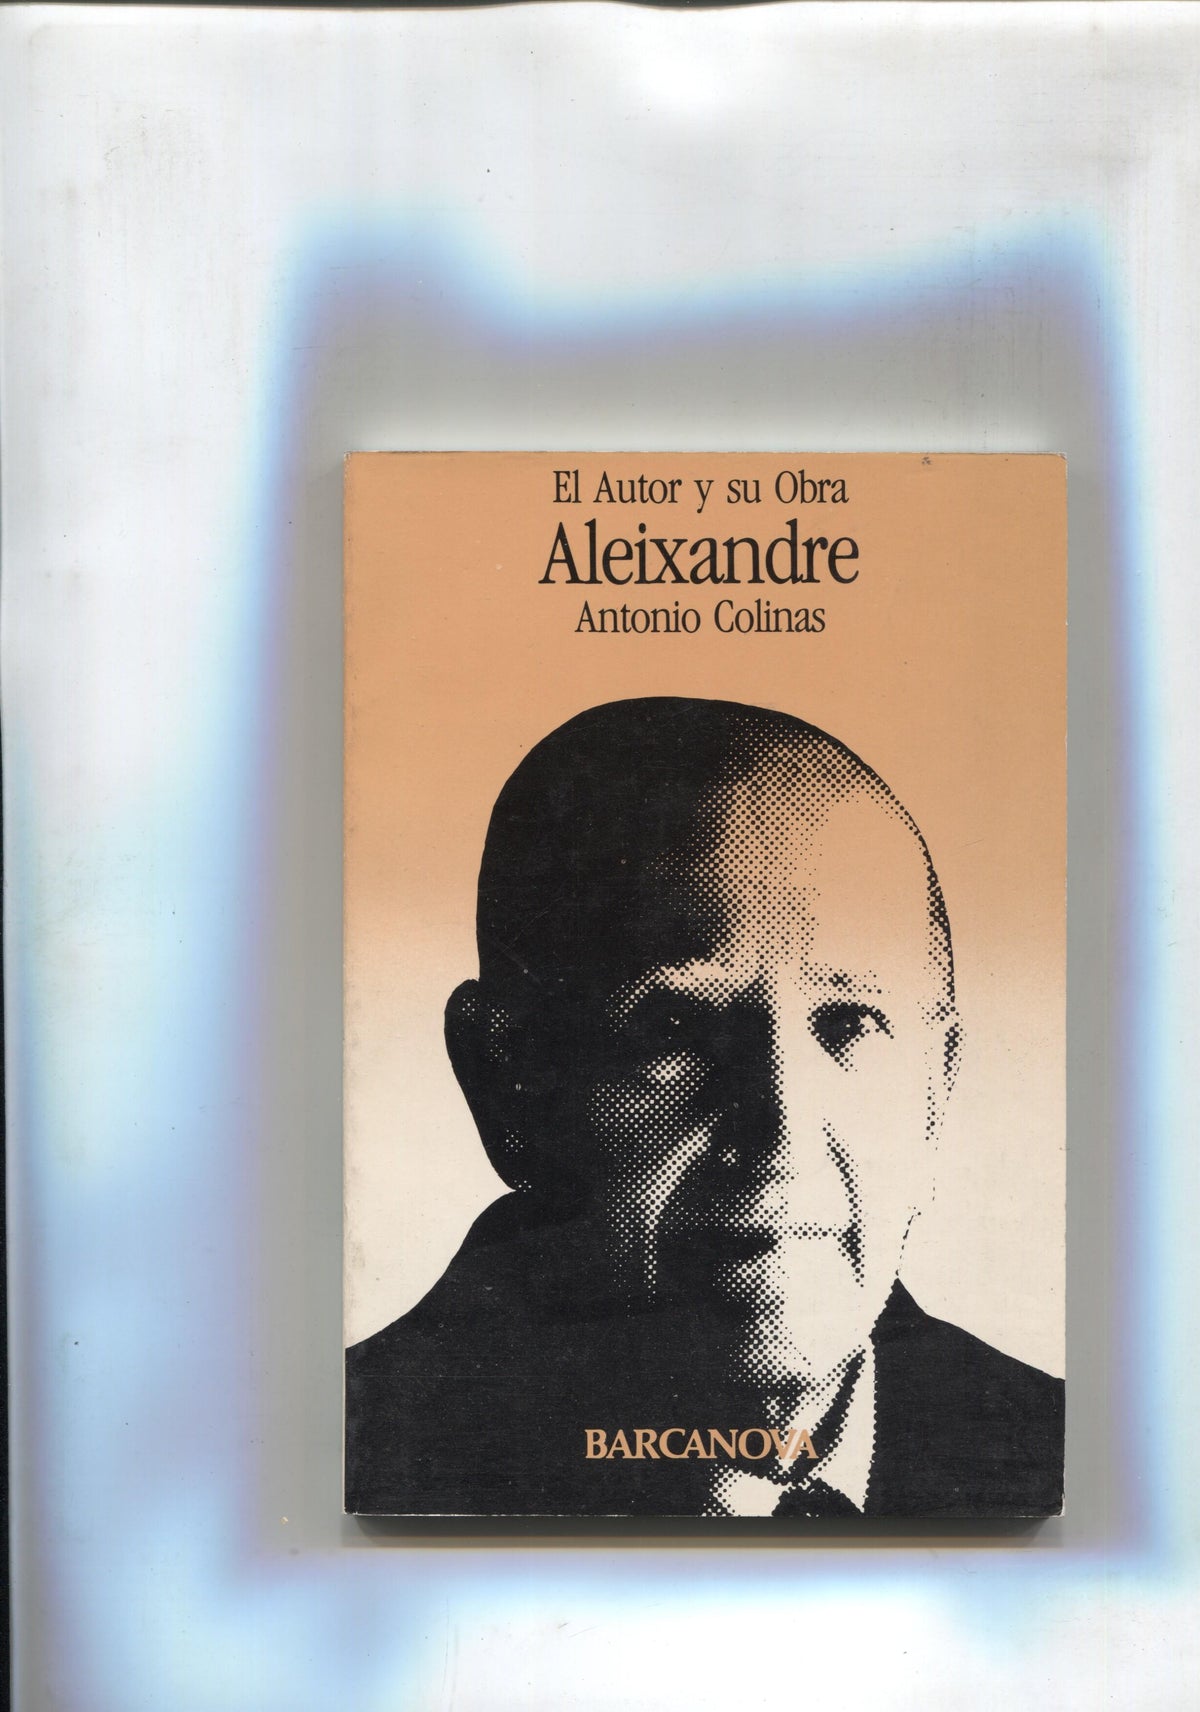 Coleccion El Autor y su obra: Vicente Aleixandre